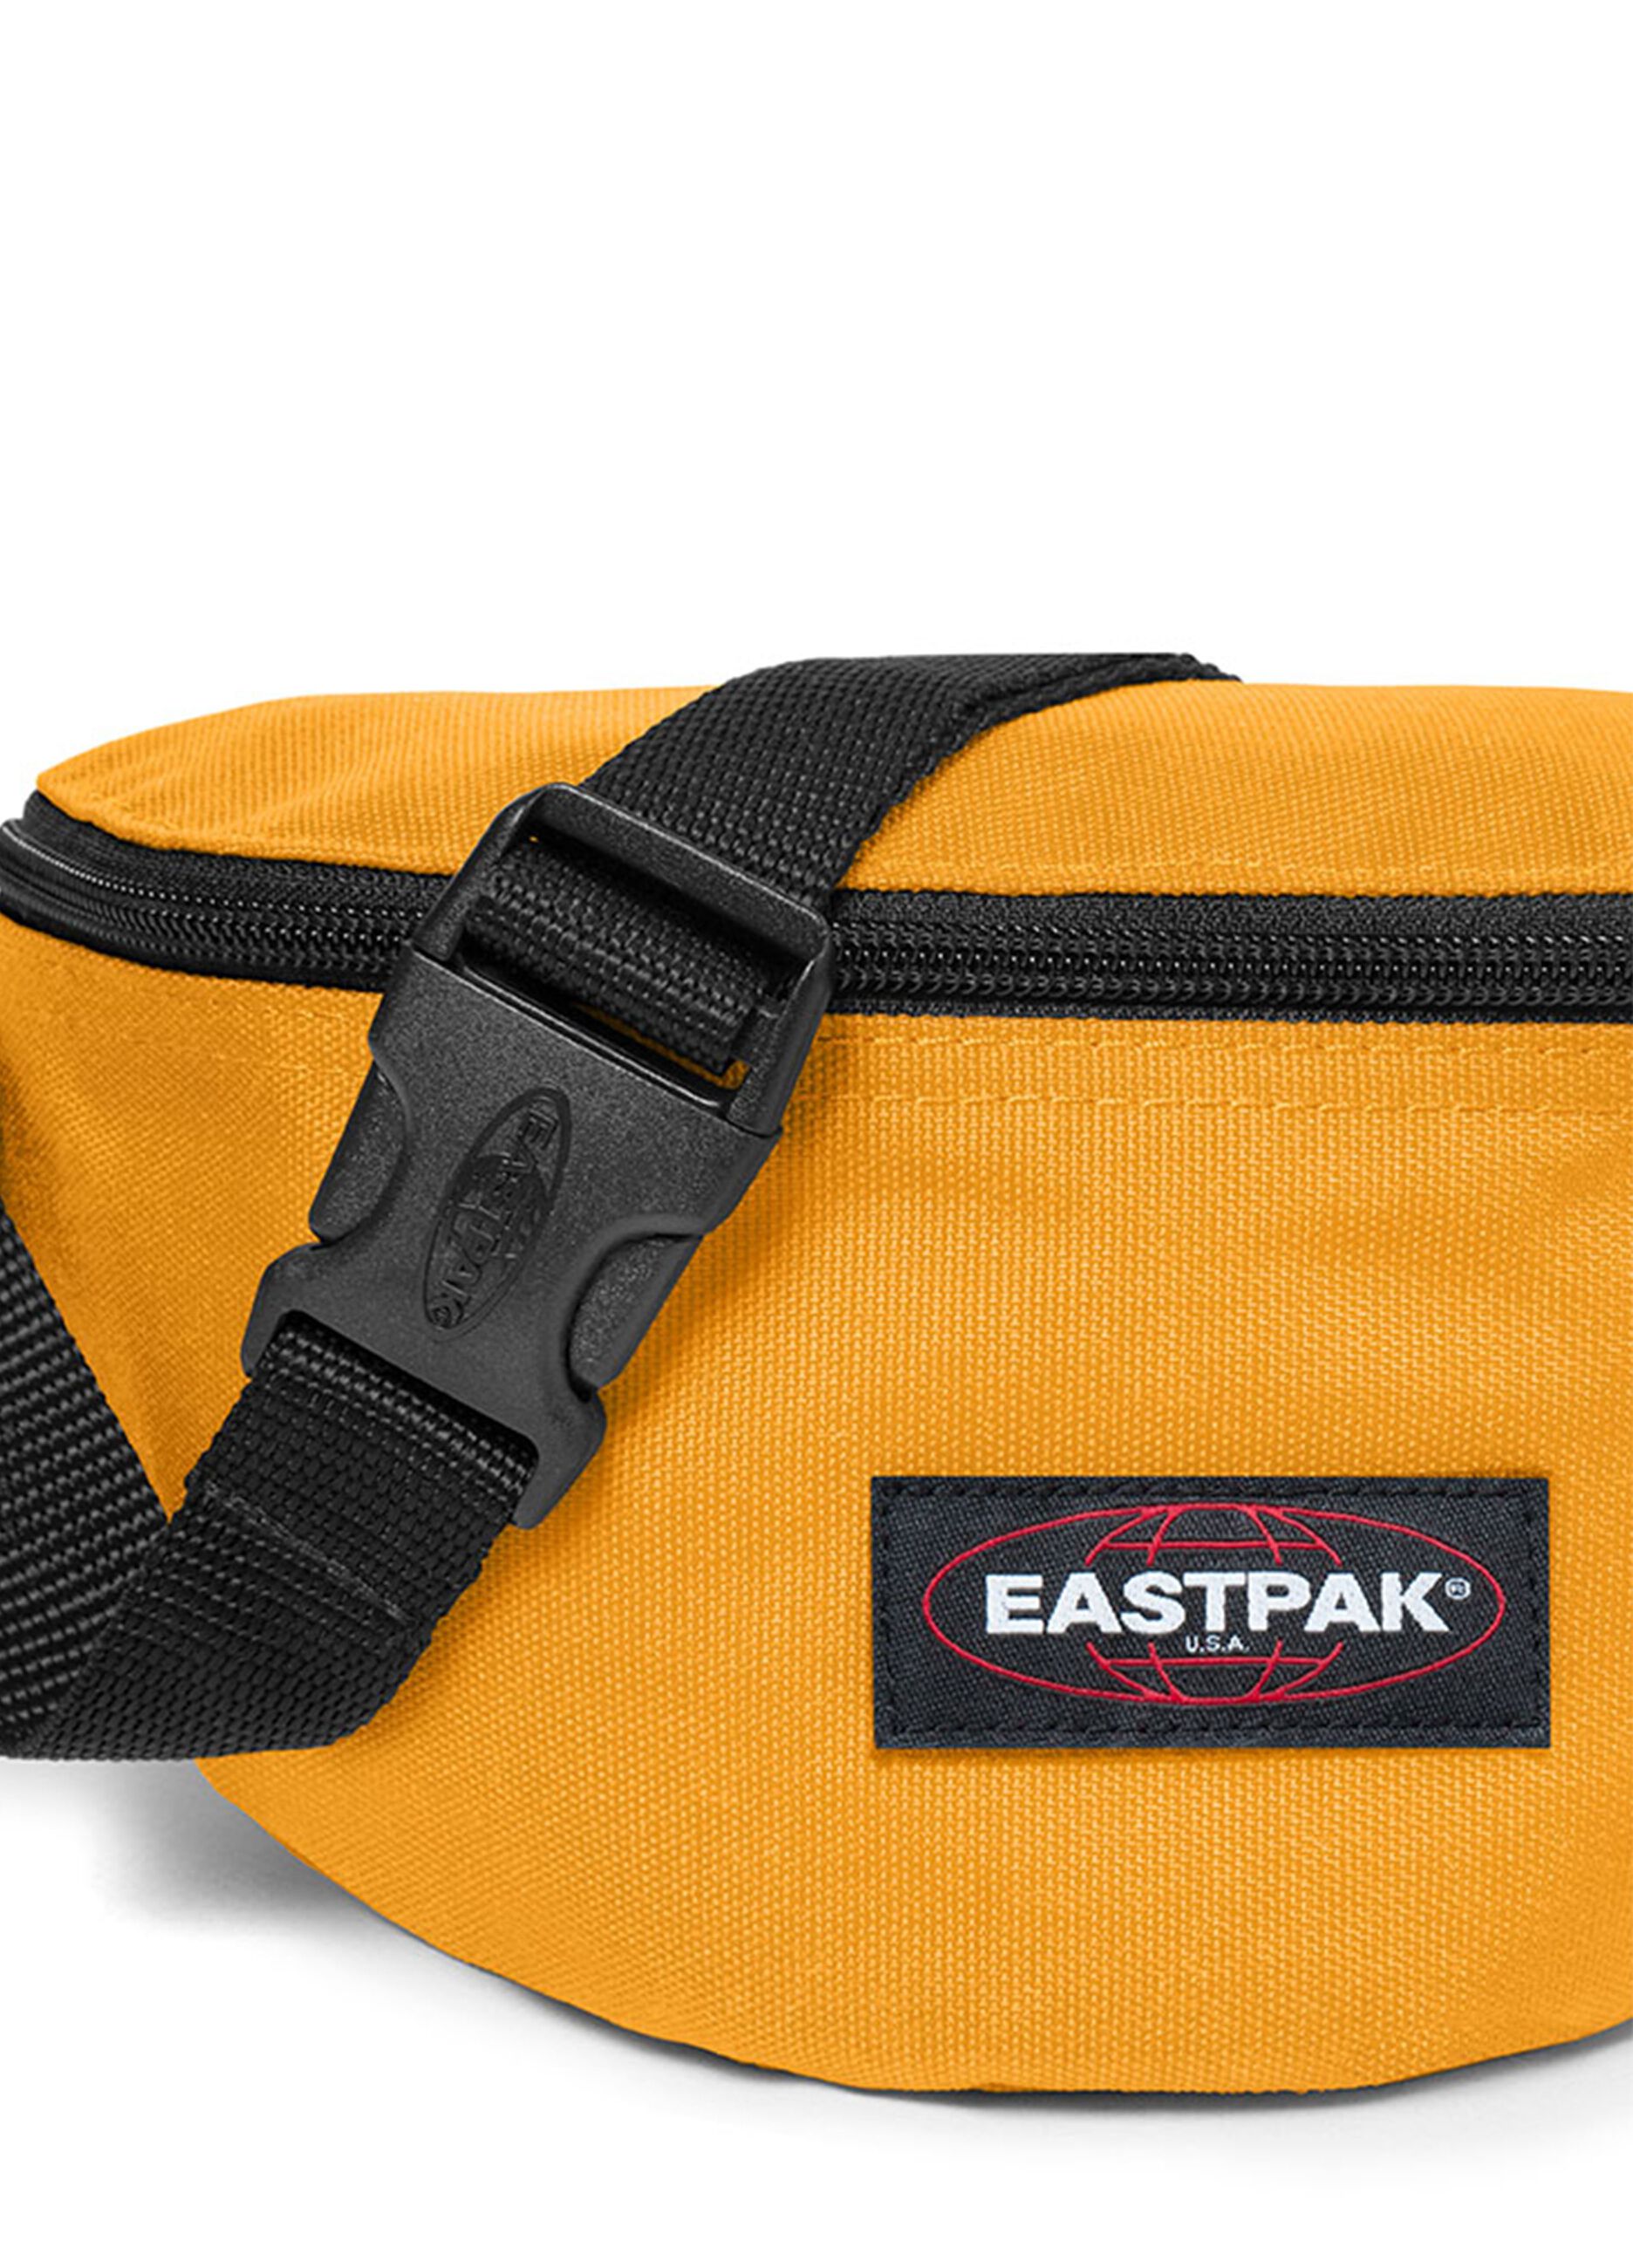 Eastpak Springer bum bag